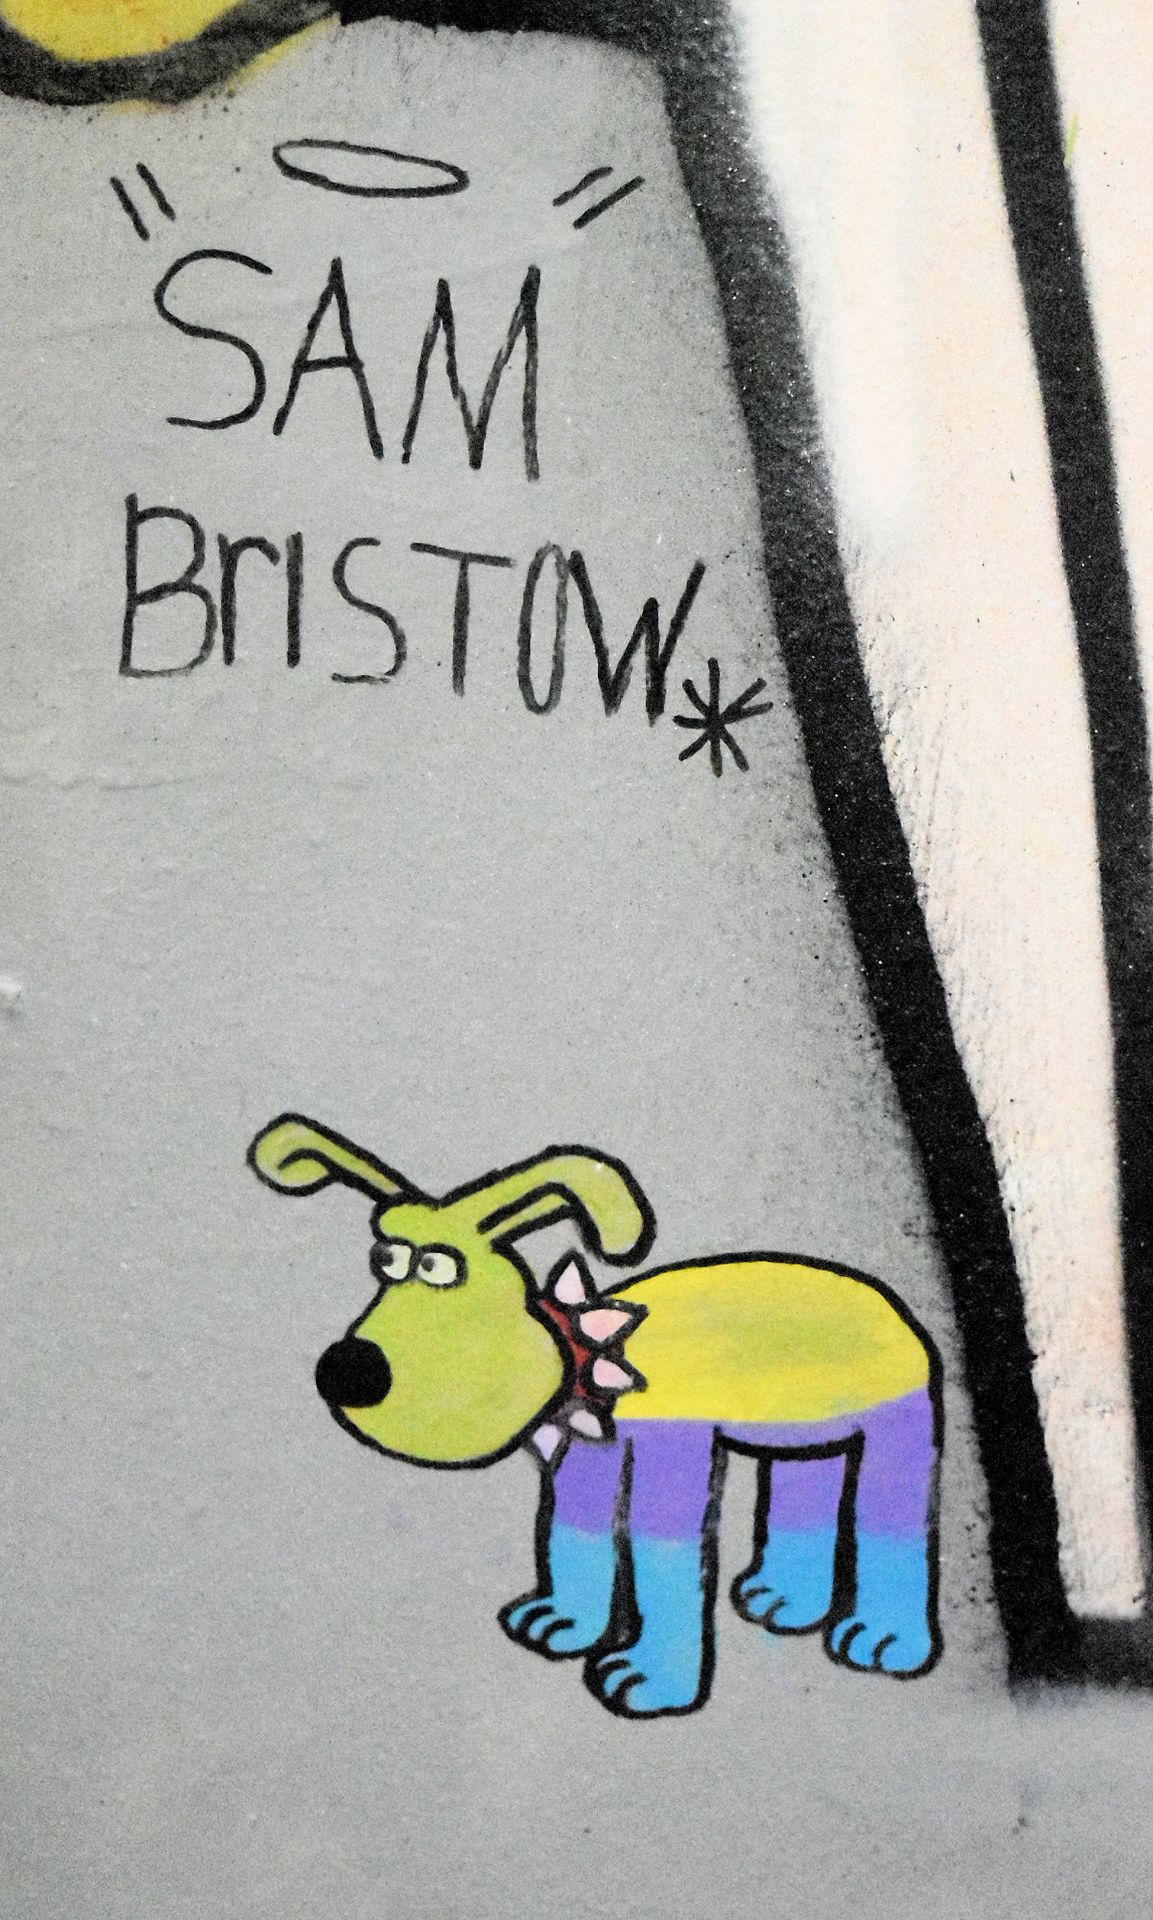 SAM BRISTOW (BRITISH) - BRISTOL NORTH/EAST/SOUTH/WEST - Bild 7 aus 20